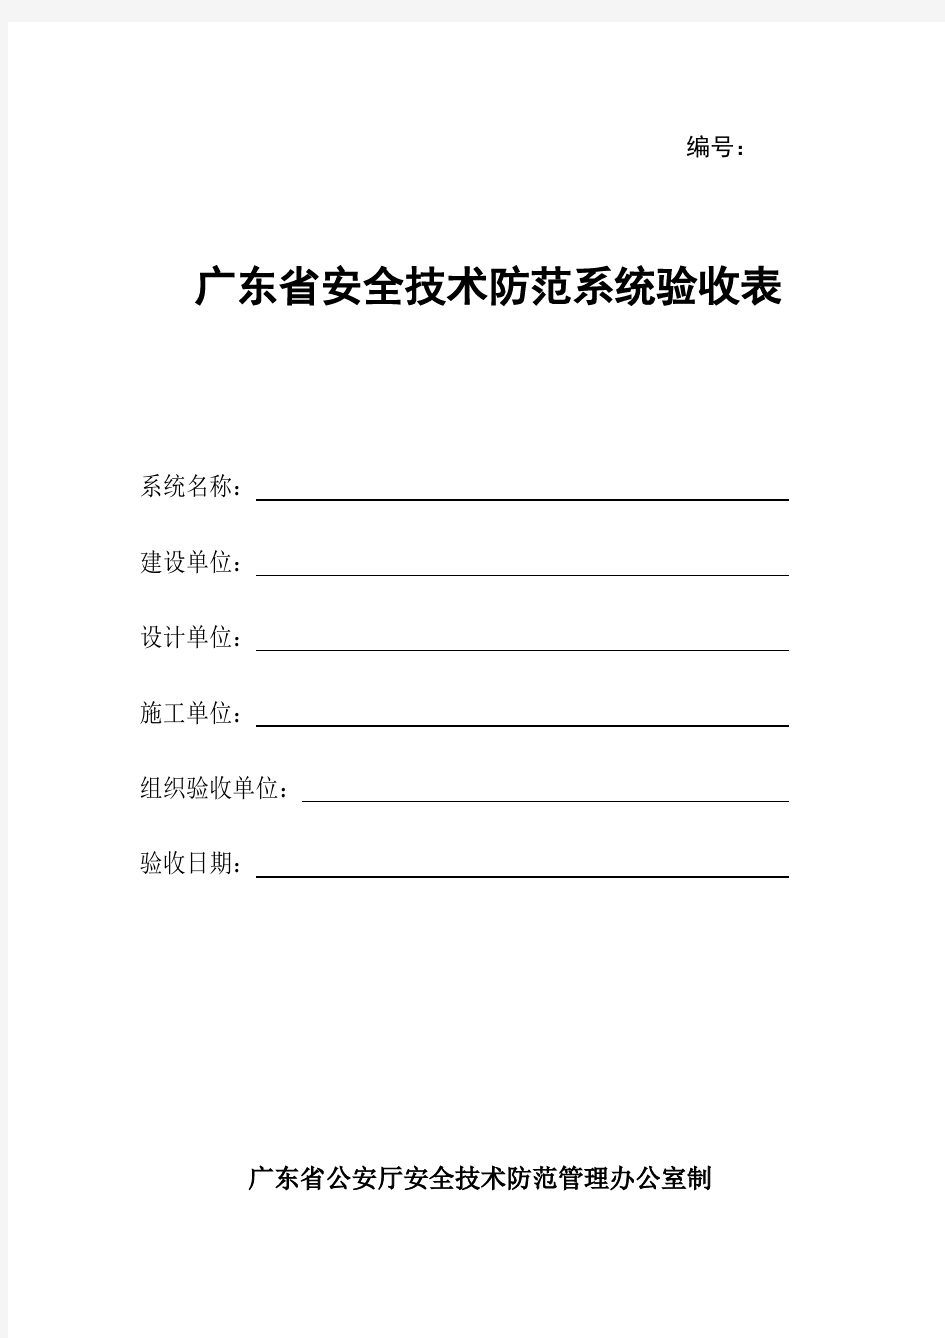 广东省安全技术防范系统验收表(完整版)